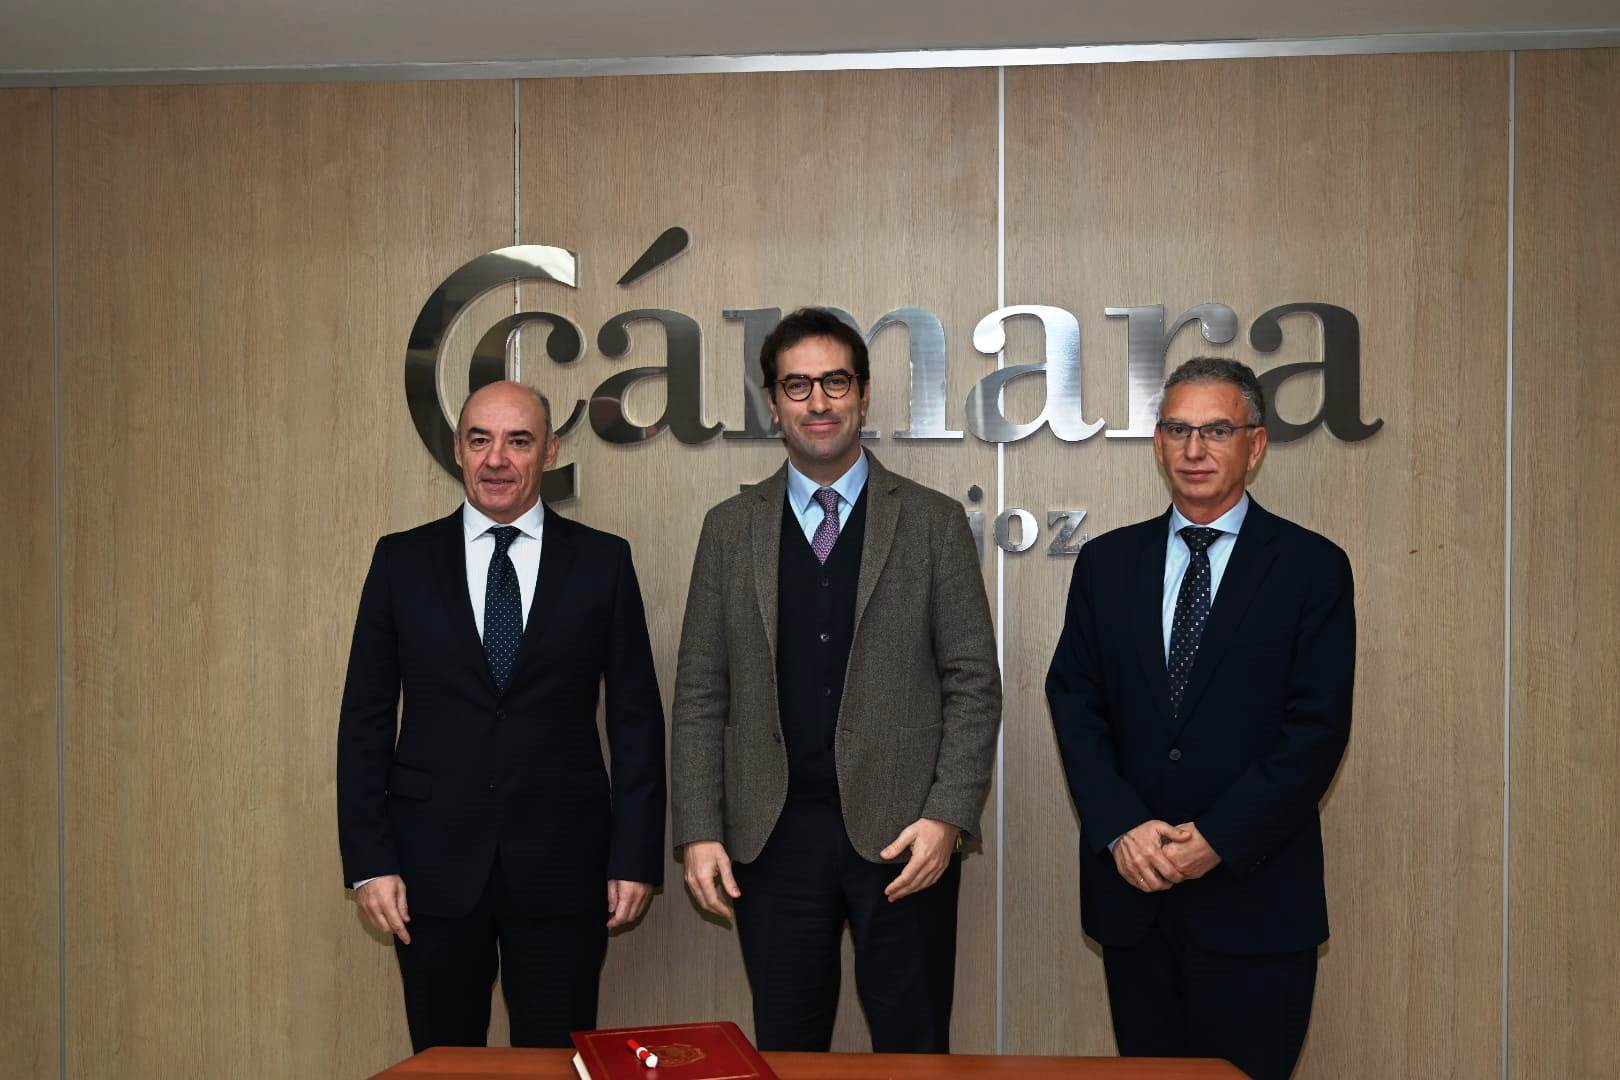 La Cámara de Badajoz acoge el primer encuentro institucional del ministro de Economía con empresarios